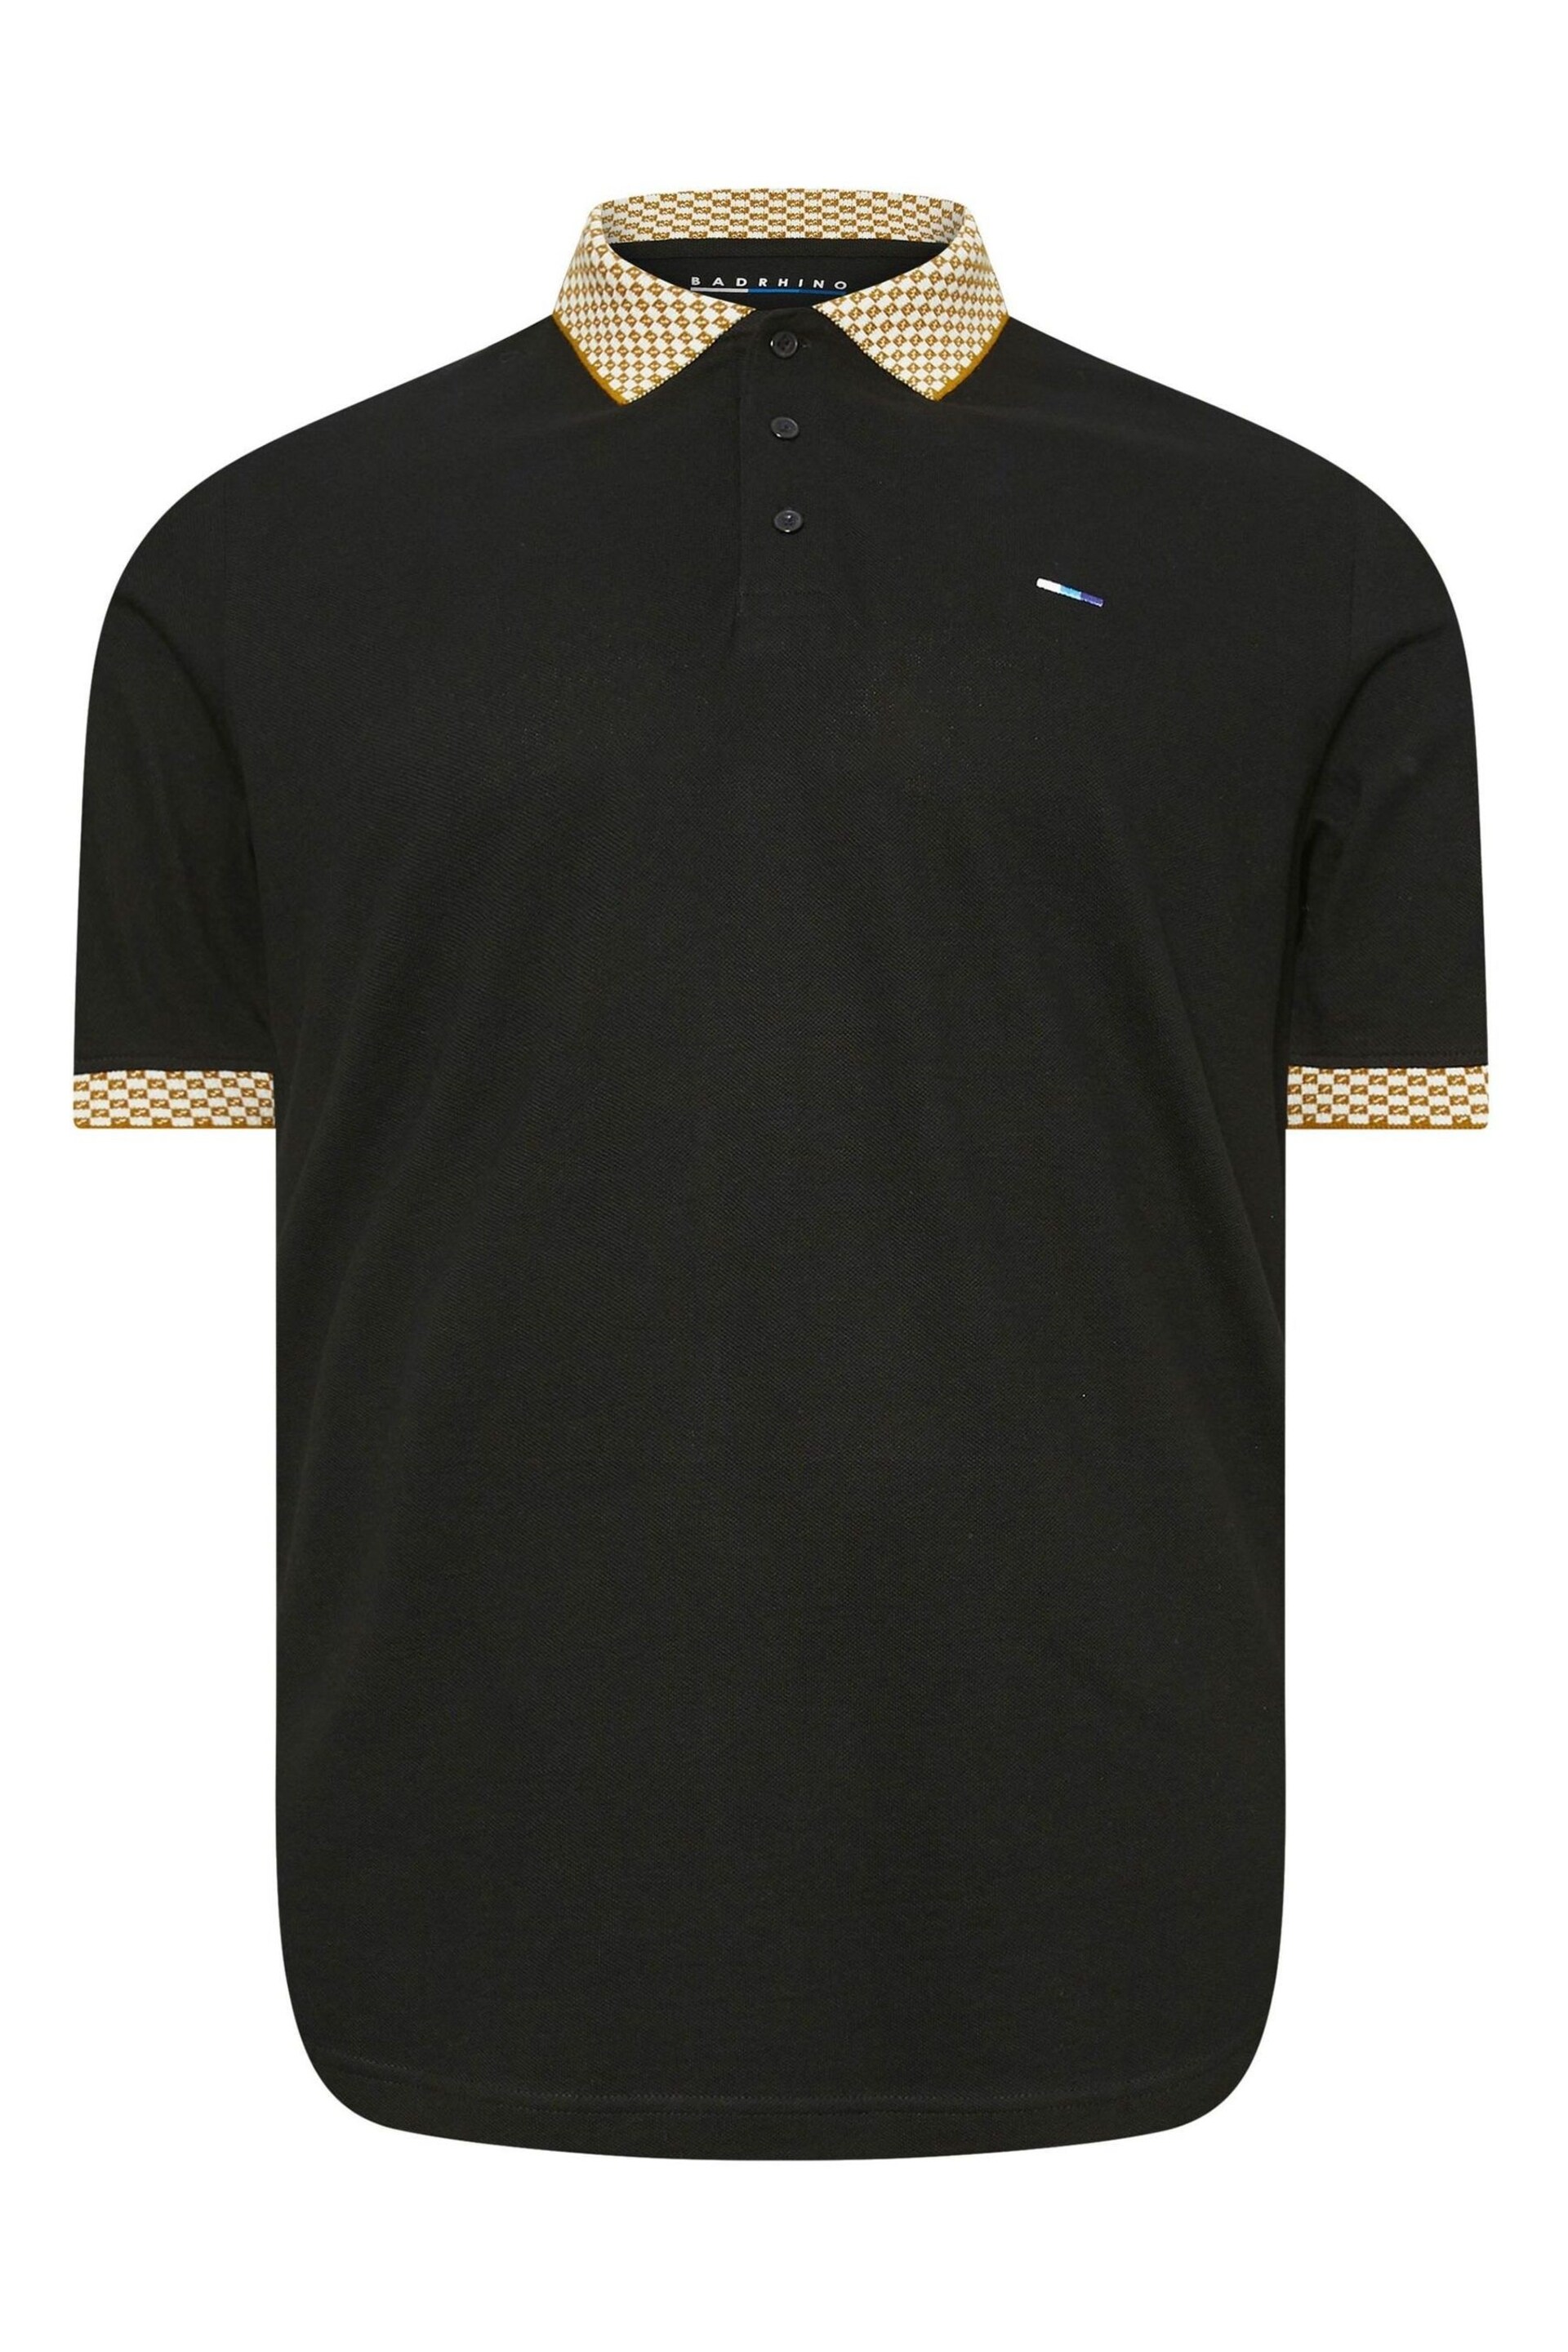 BadRhino Big & Tall Black Jacquard Collar Polo Shirt - Image 1 of 2